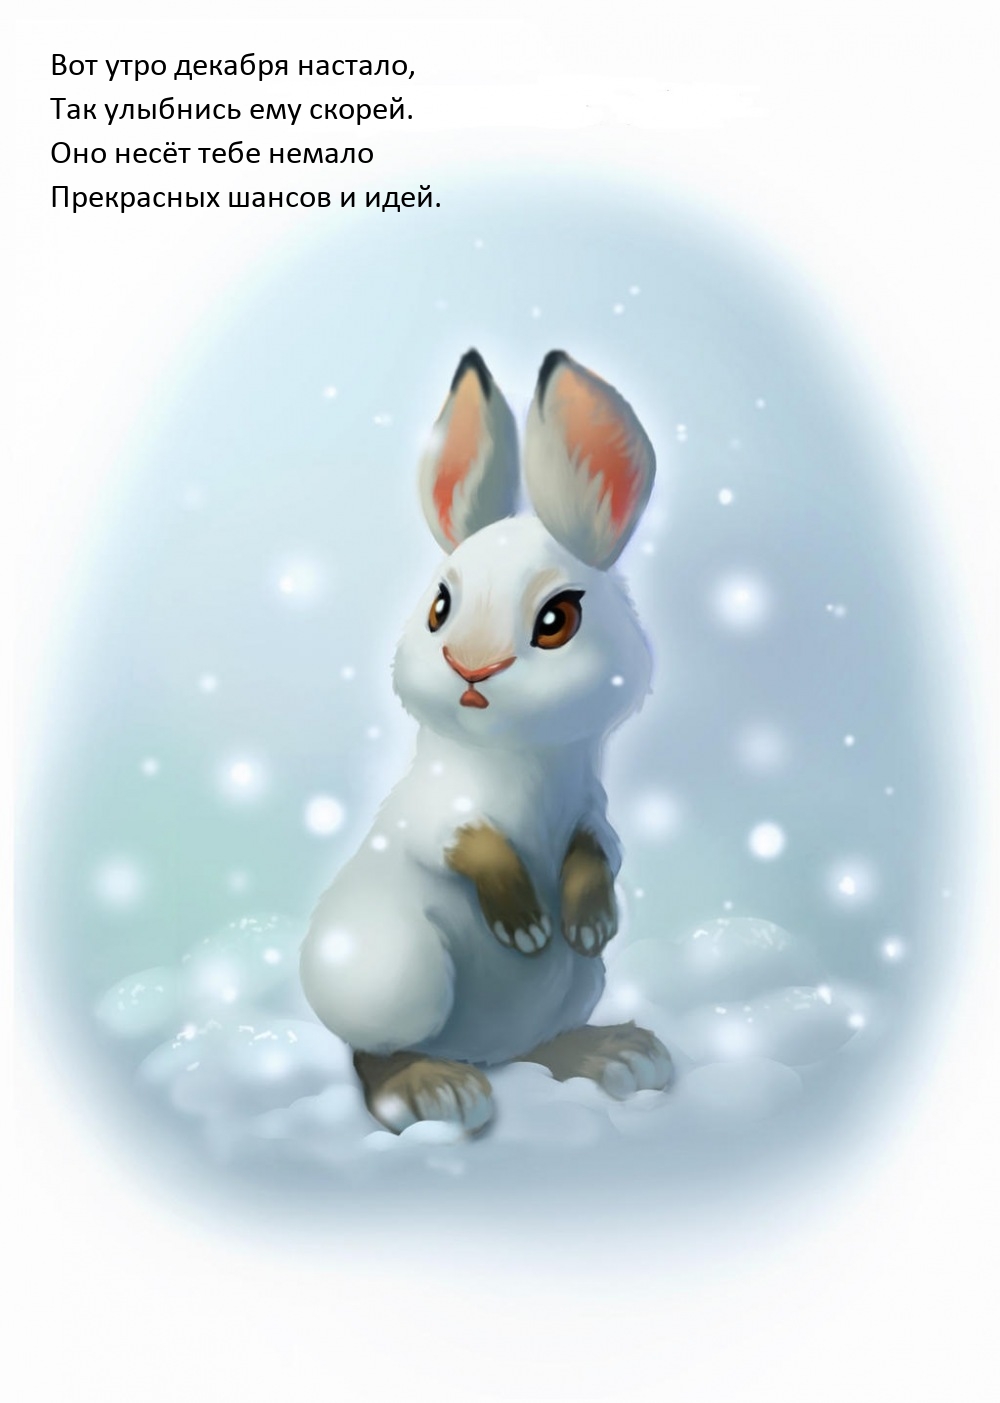 Снежный кролик из снега